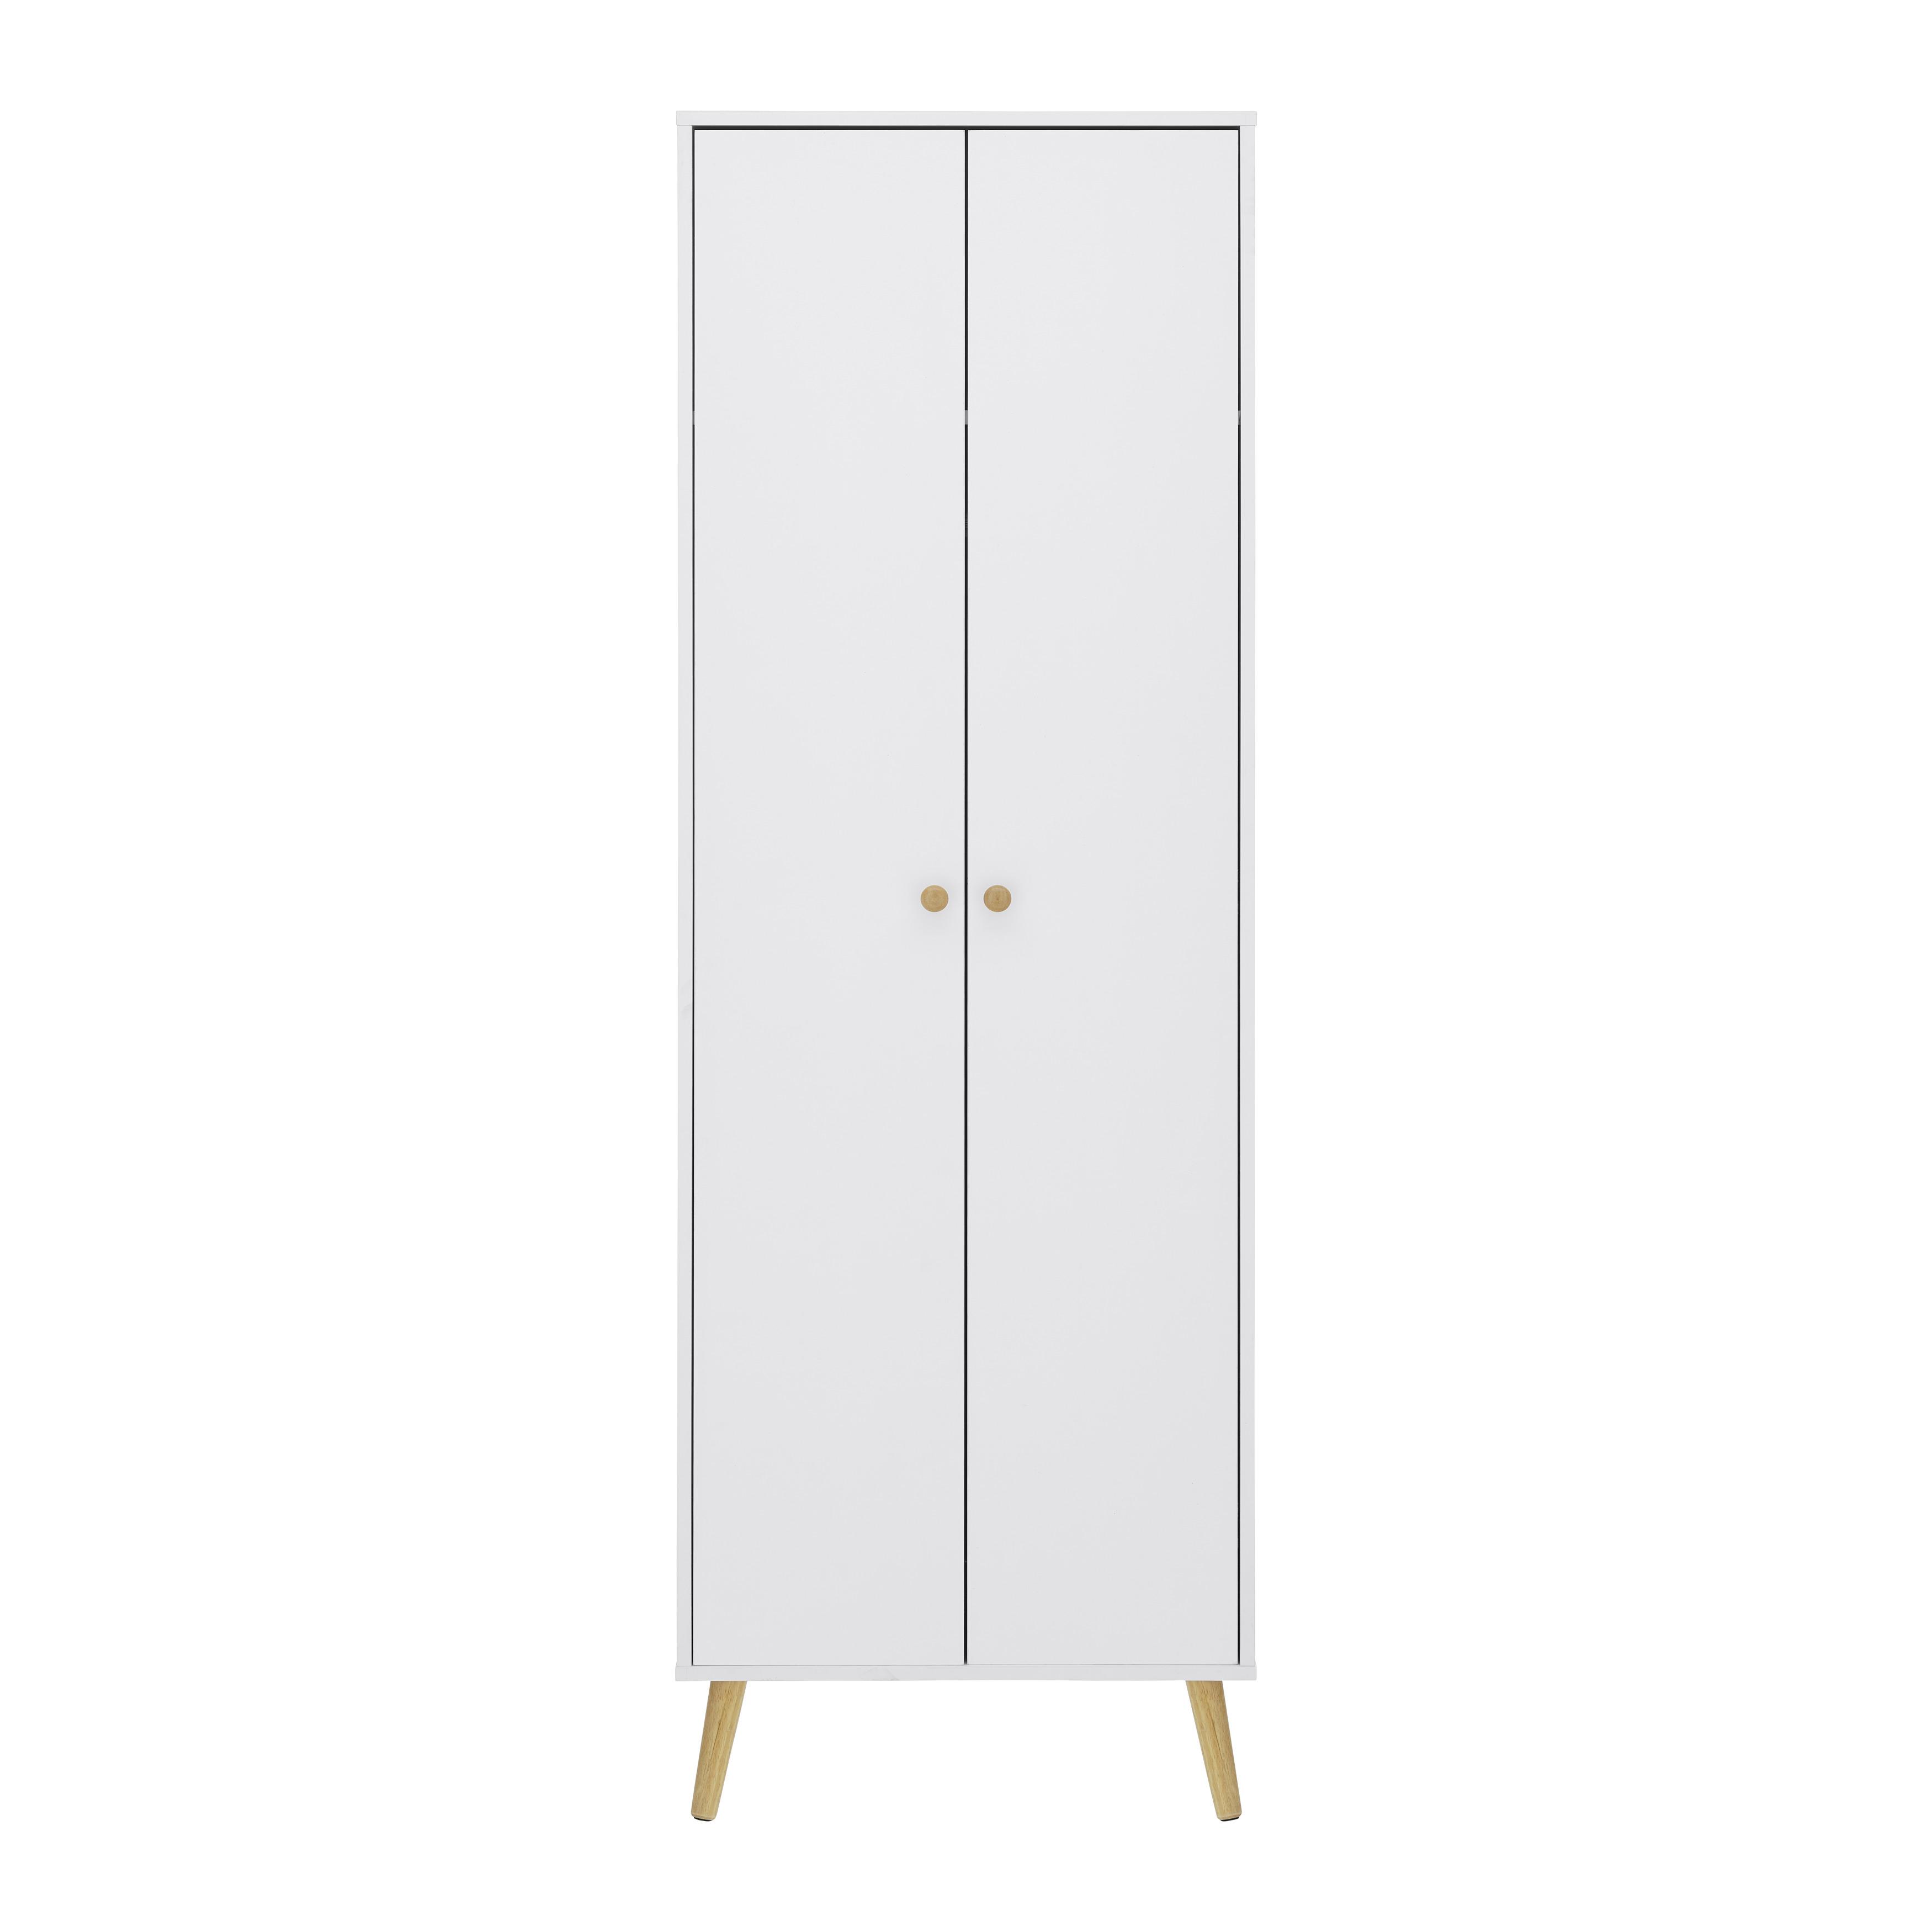 Kleiderschrank "Ludo", weiß - Weiß, MODERN, Holz/Metall (60/180/40cm) - Bessagi Home